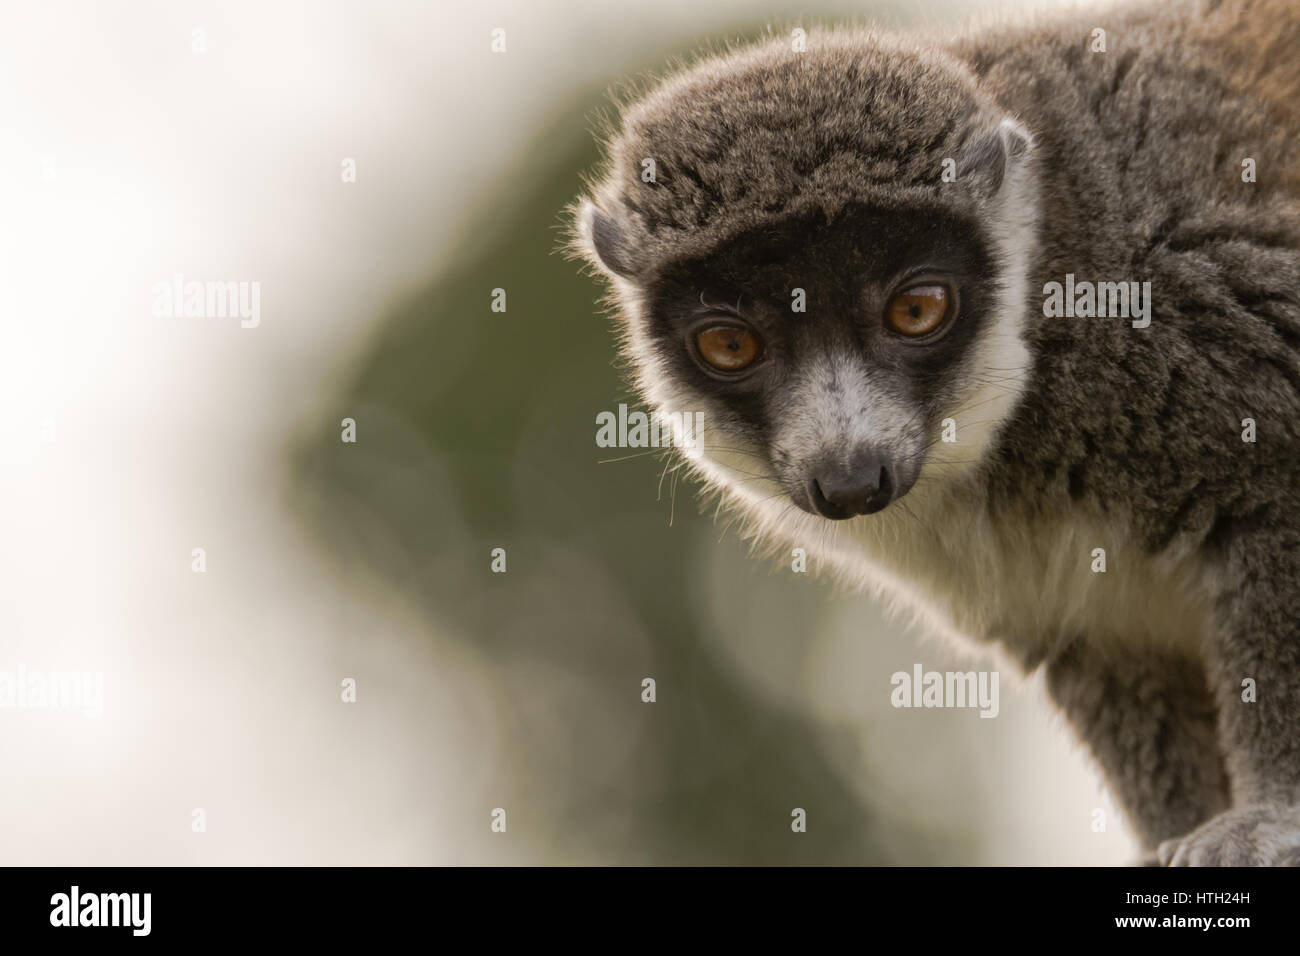 Mongoose lemur (il Eulemur mongoz) a testa alta. Femmina primate arboree nella famiglia Lemuridae, nativo del Madagascar e delle Isole Comore Foto Stock